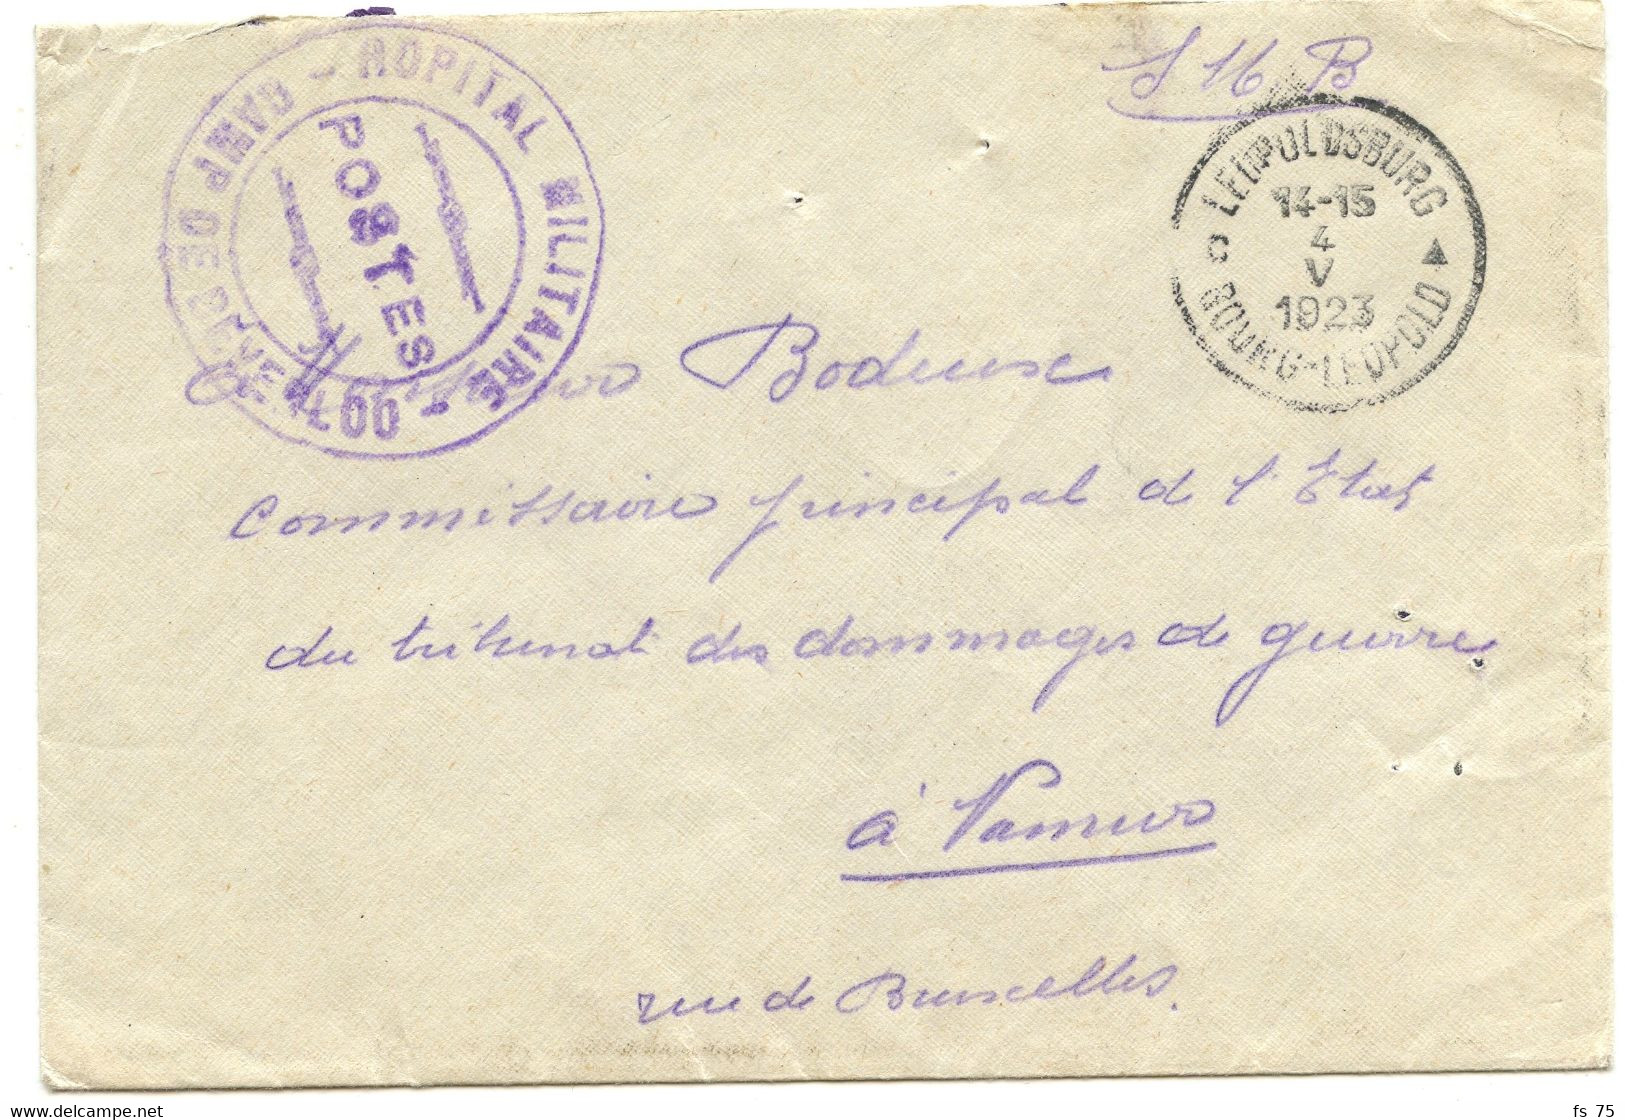 BELGIQUE -SIMPLE CERCLE BILINGUE BOURG-LEOPOLD + HOPITAL MILITAIRE POSTES CAMP DE BEVERLOO SUR LETTRE EN FRANCHISE, 1923 - Franchise